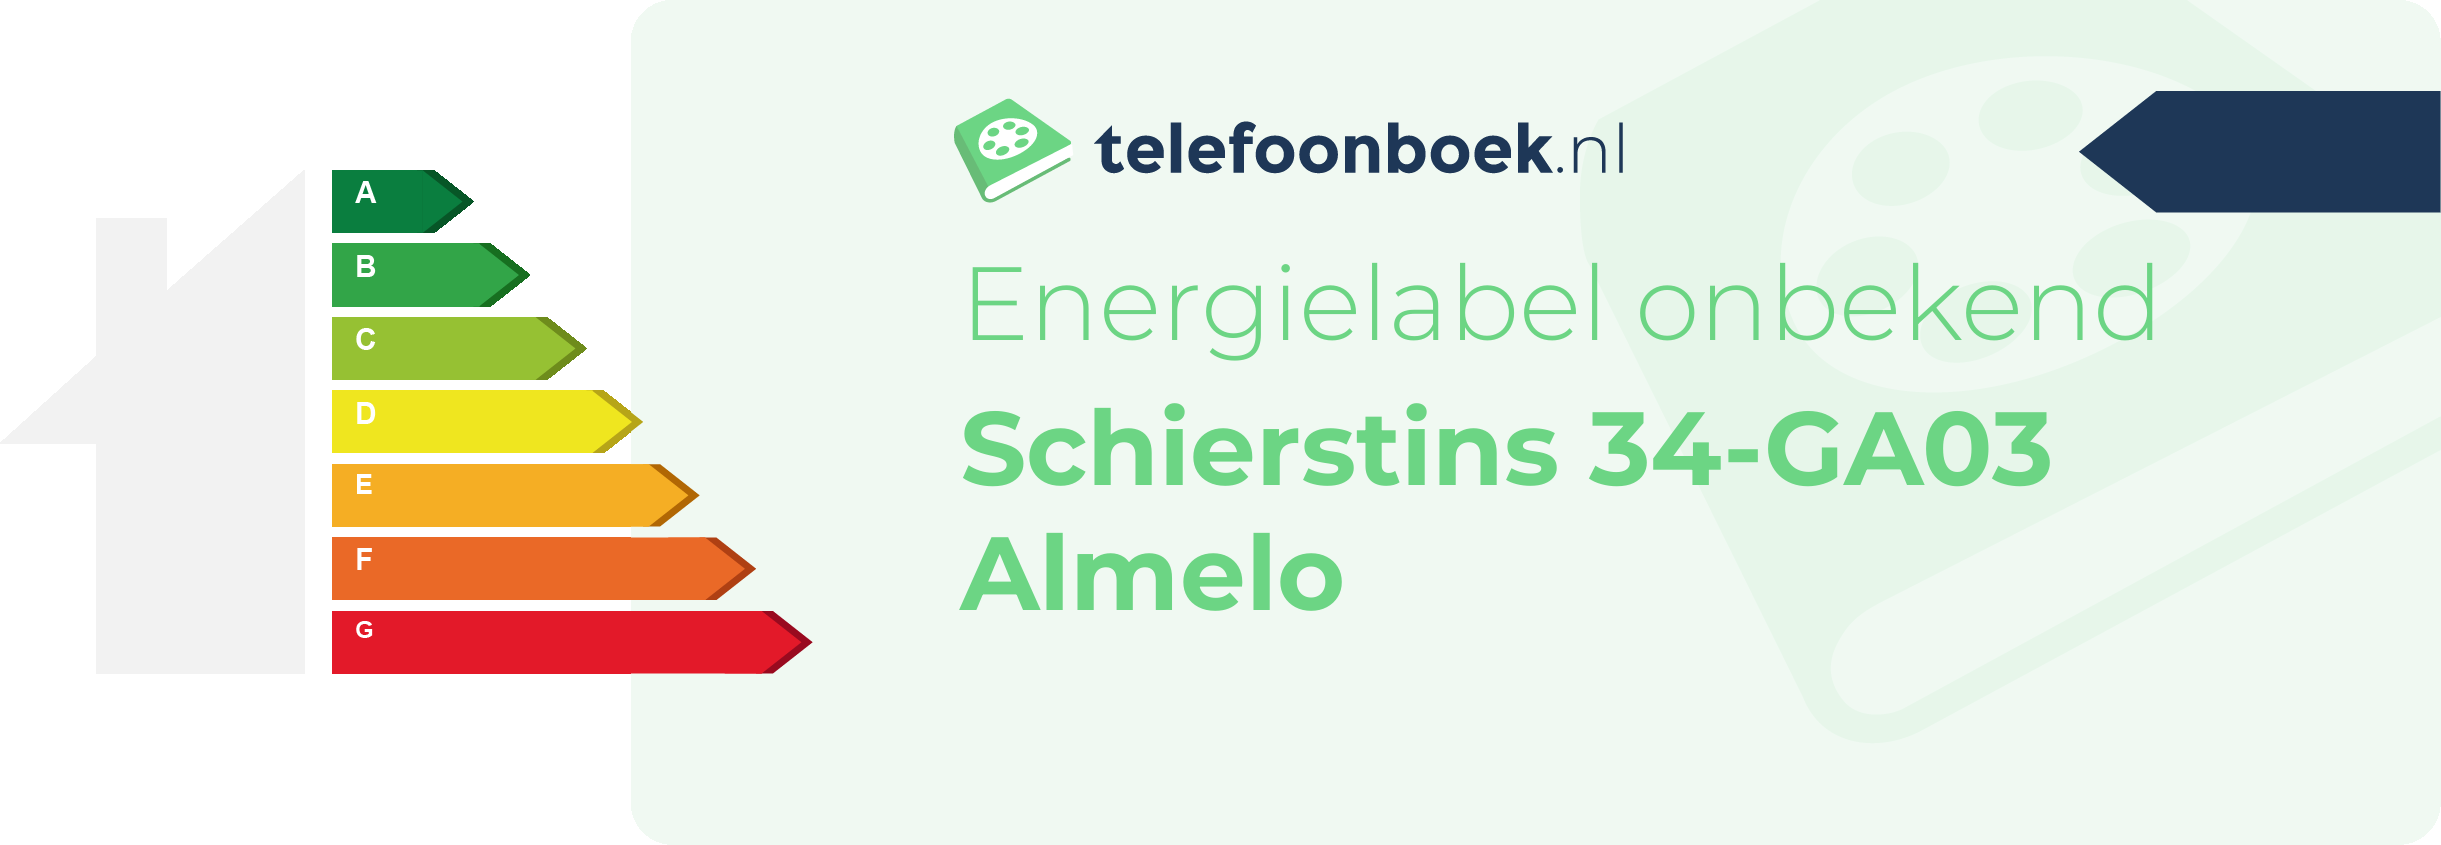 Energielabel Schierstins 34-GA03 Almelo